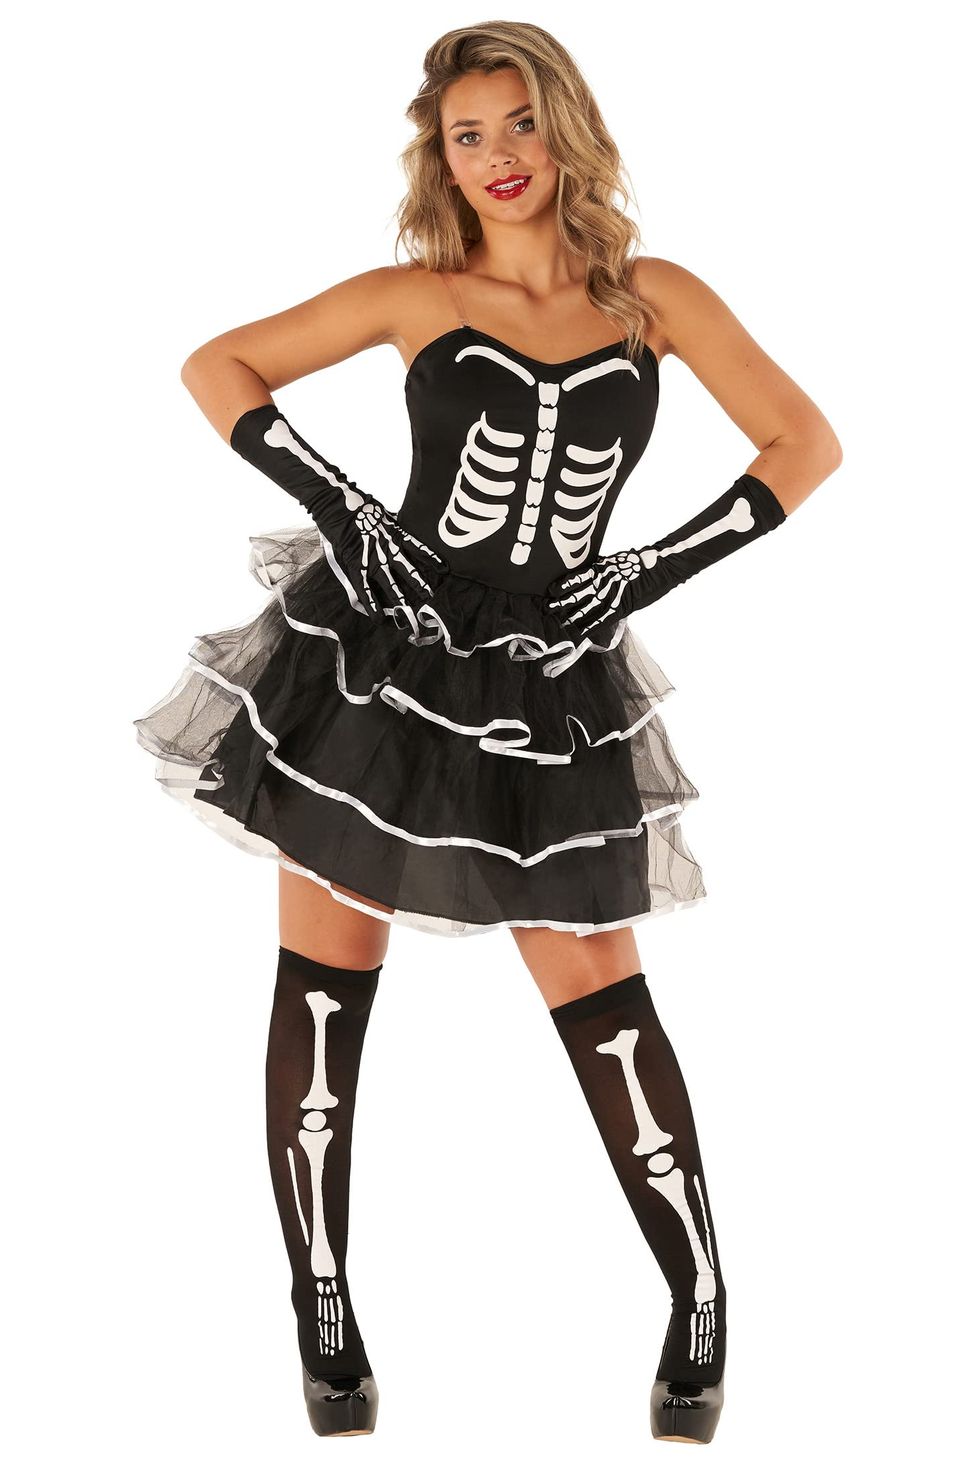 Ladies Skeleton Halloween Costumes